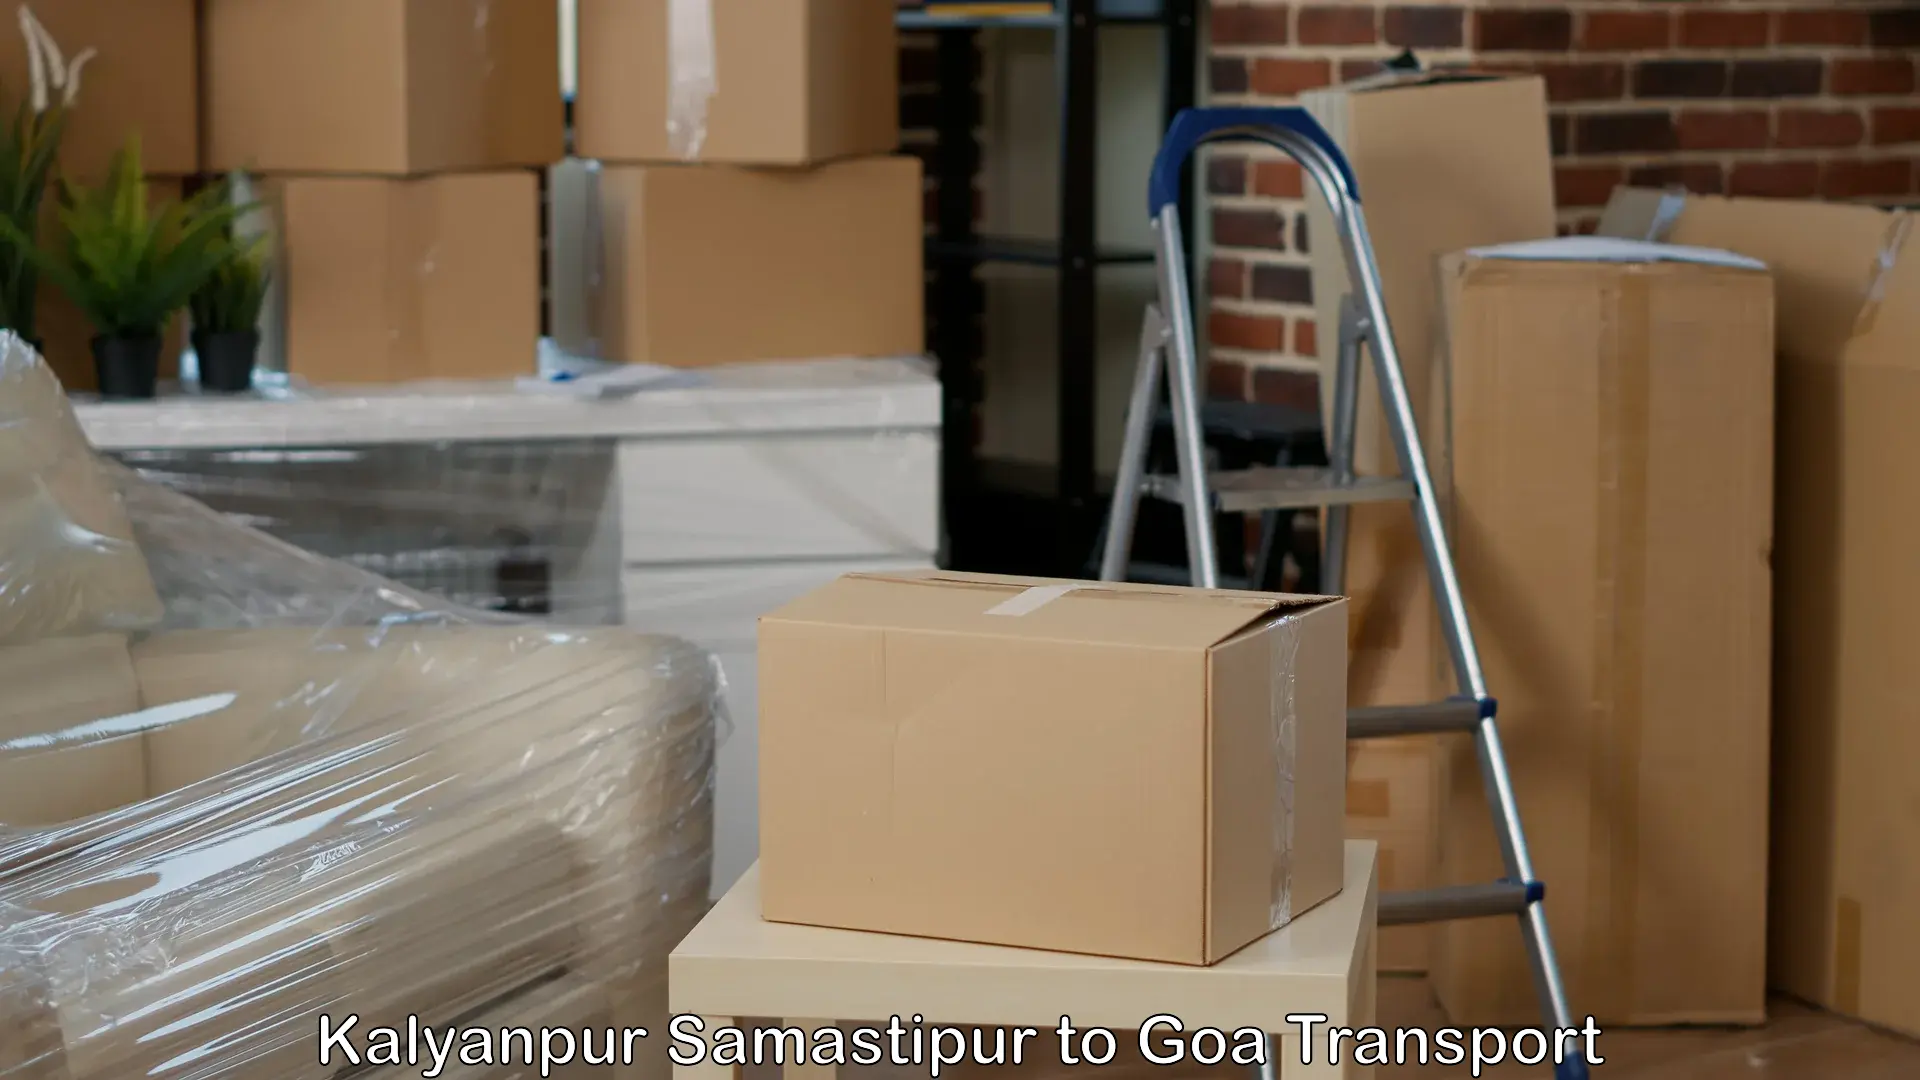 Transport in sharing Kalyanpur Samastipur to Ponda